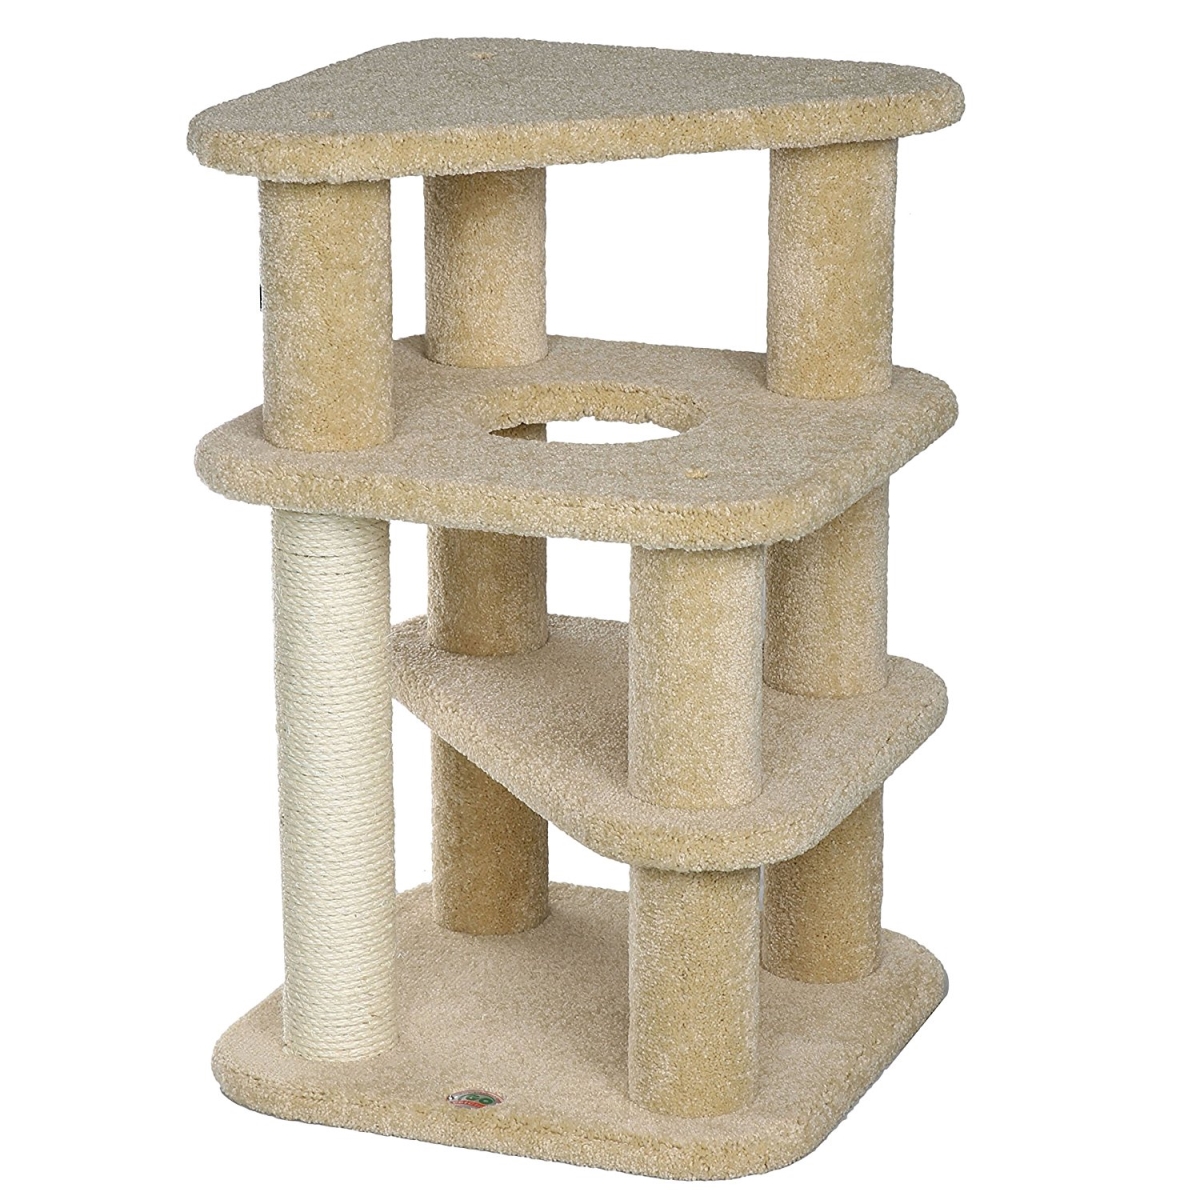 Lp-841 32.25 In. Premium Carpeted Cat Tree Furniture, Beige